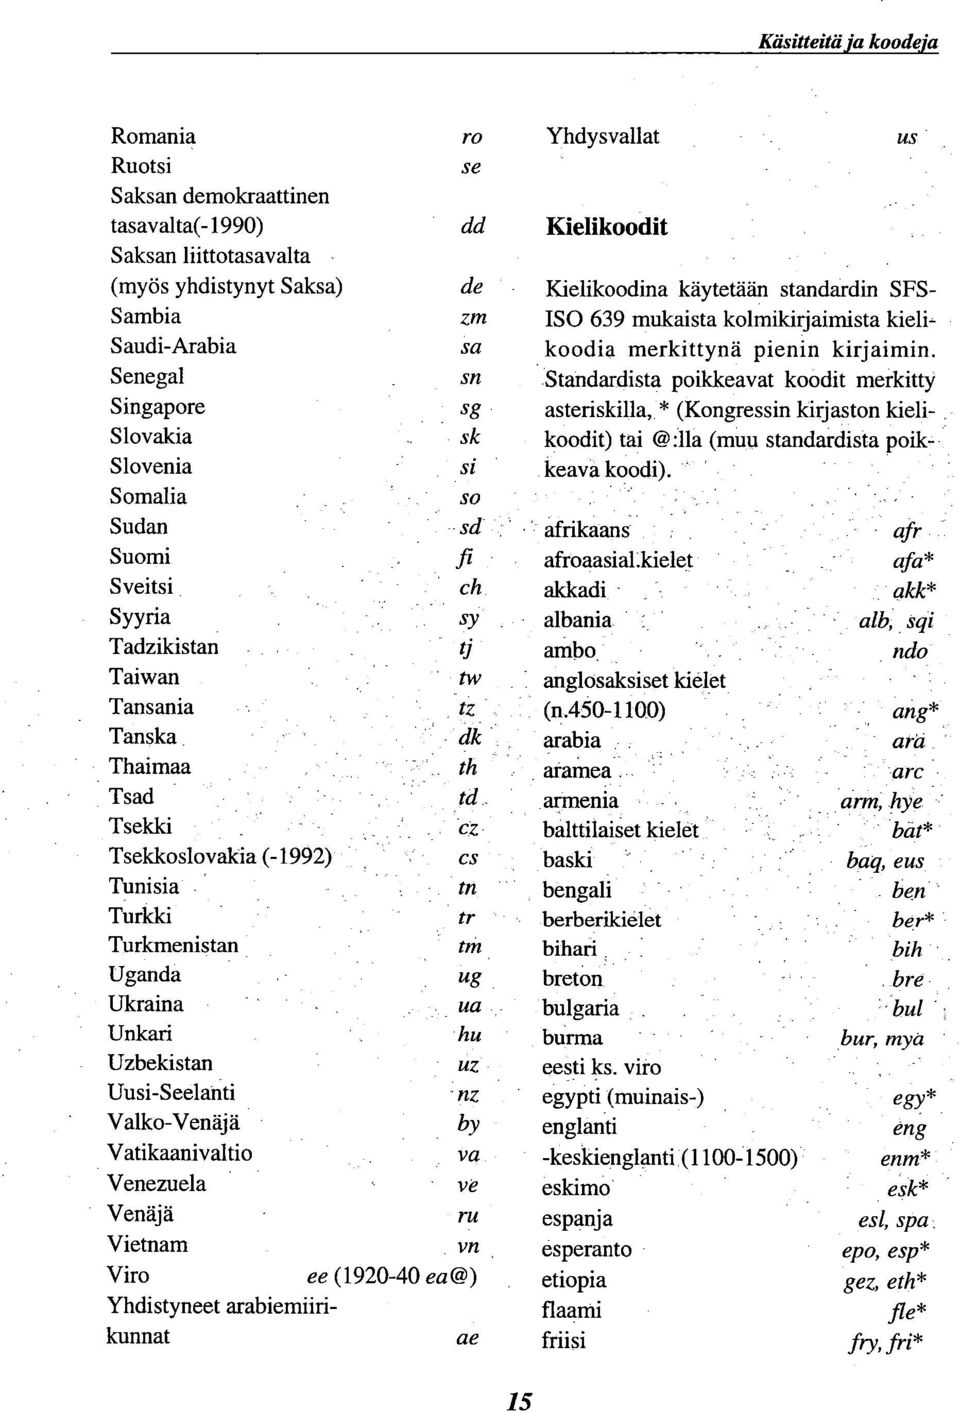 Venezuela Venäjä Vietnam Viro Yhdistyneet arabiemiirikunnat r0 Yhdysvallat US se dd Kielikoodit de Kielikoodina käytetään standardin SFSzm ISO 639 mukaista kolmikirjaimista kielisa koodia merkittynä